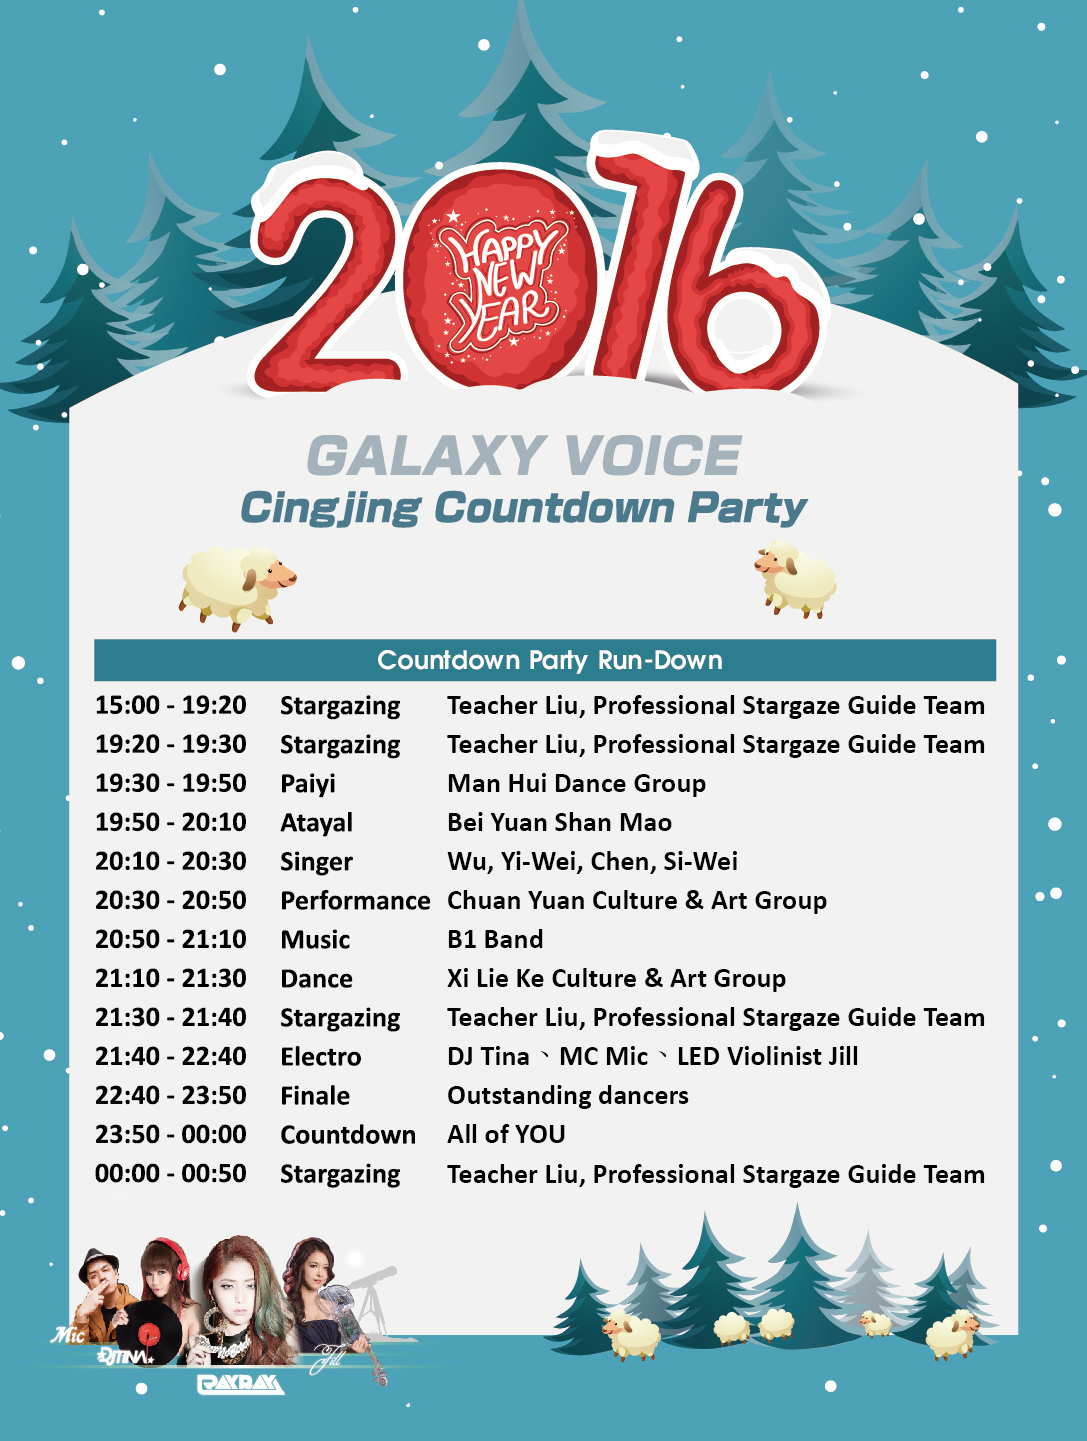 2015 Nantou Cingjing Countdown Party - 20151228111751-273043737.jpg(圖)